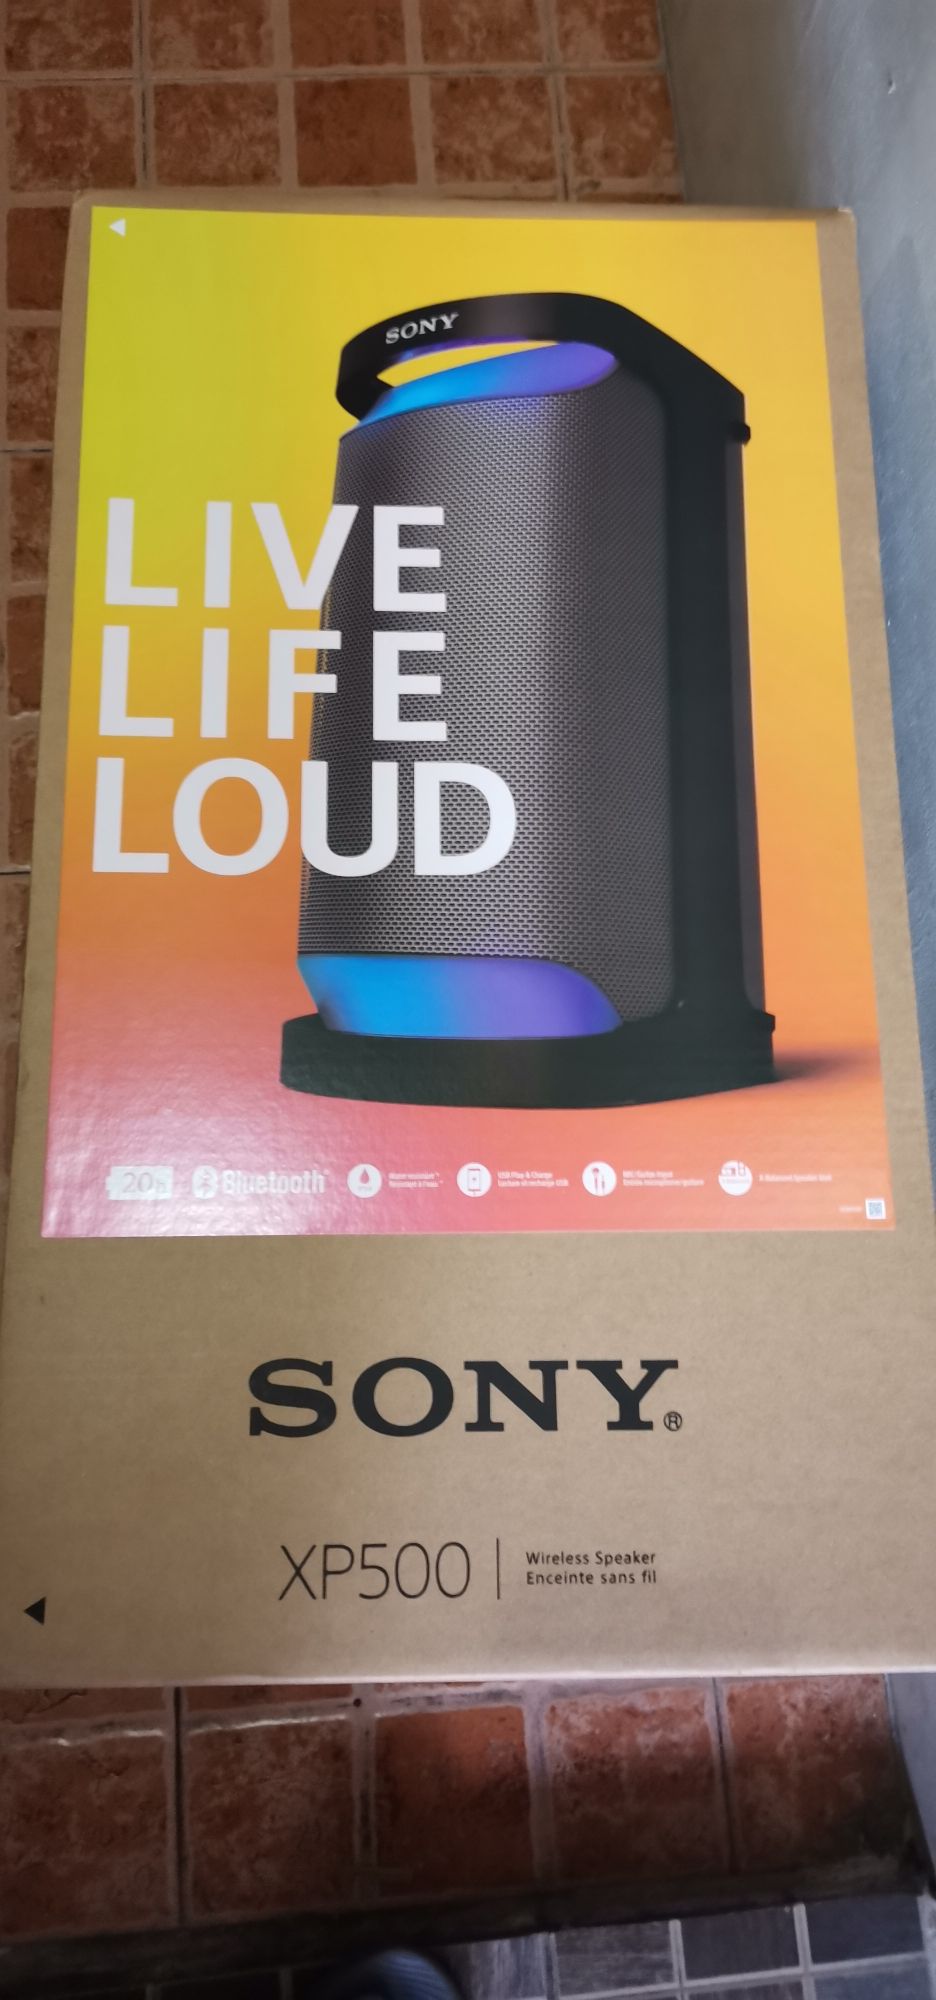 Sony Enceinte sans fil portable XP500 – X-series